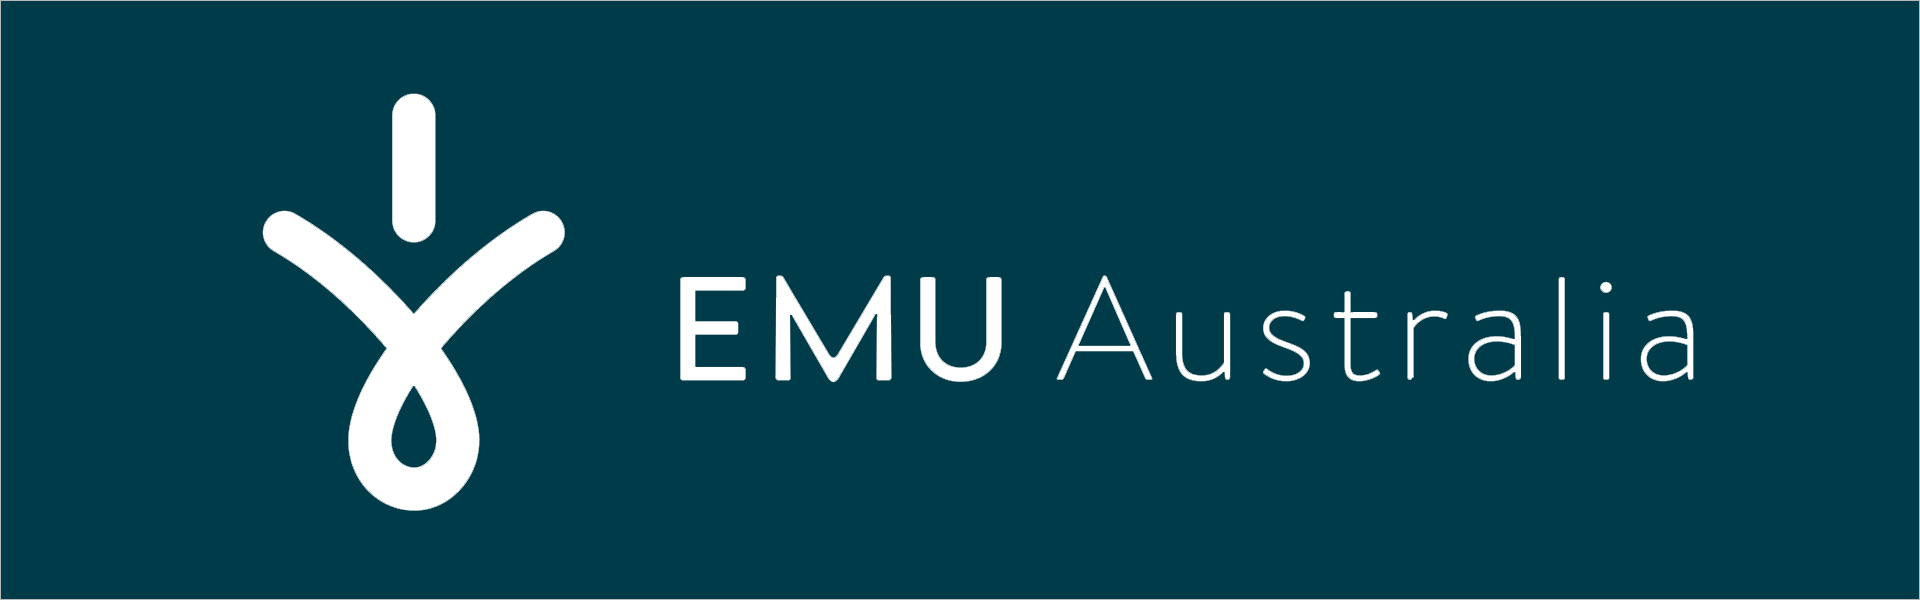 Laste saapad EMU Australia brumby lo midnight, sinist värvi Emu Australia